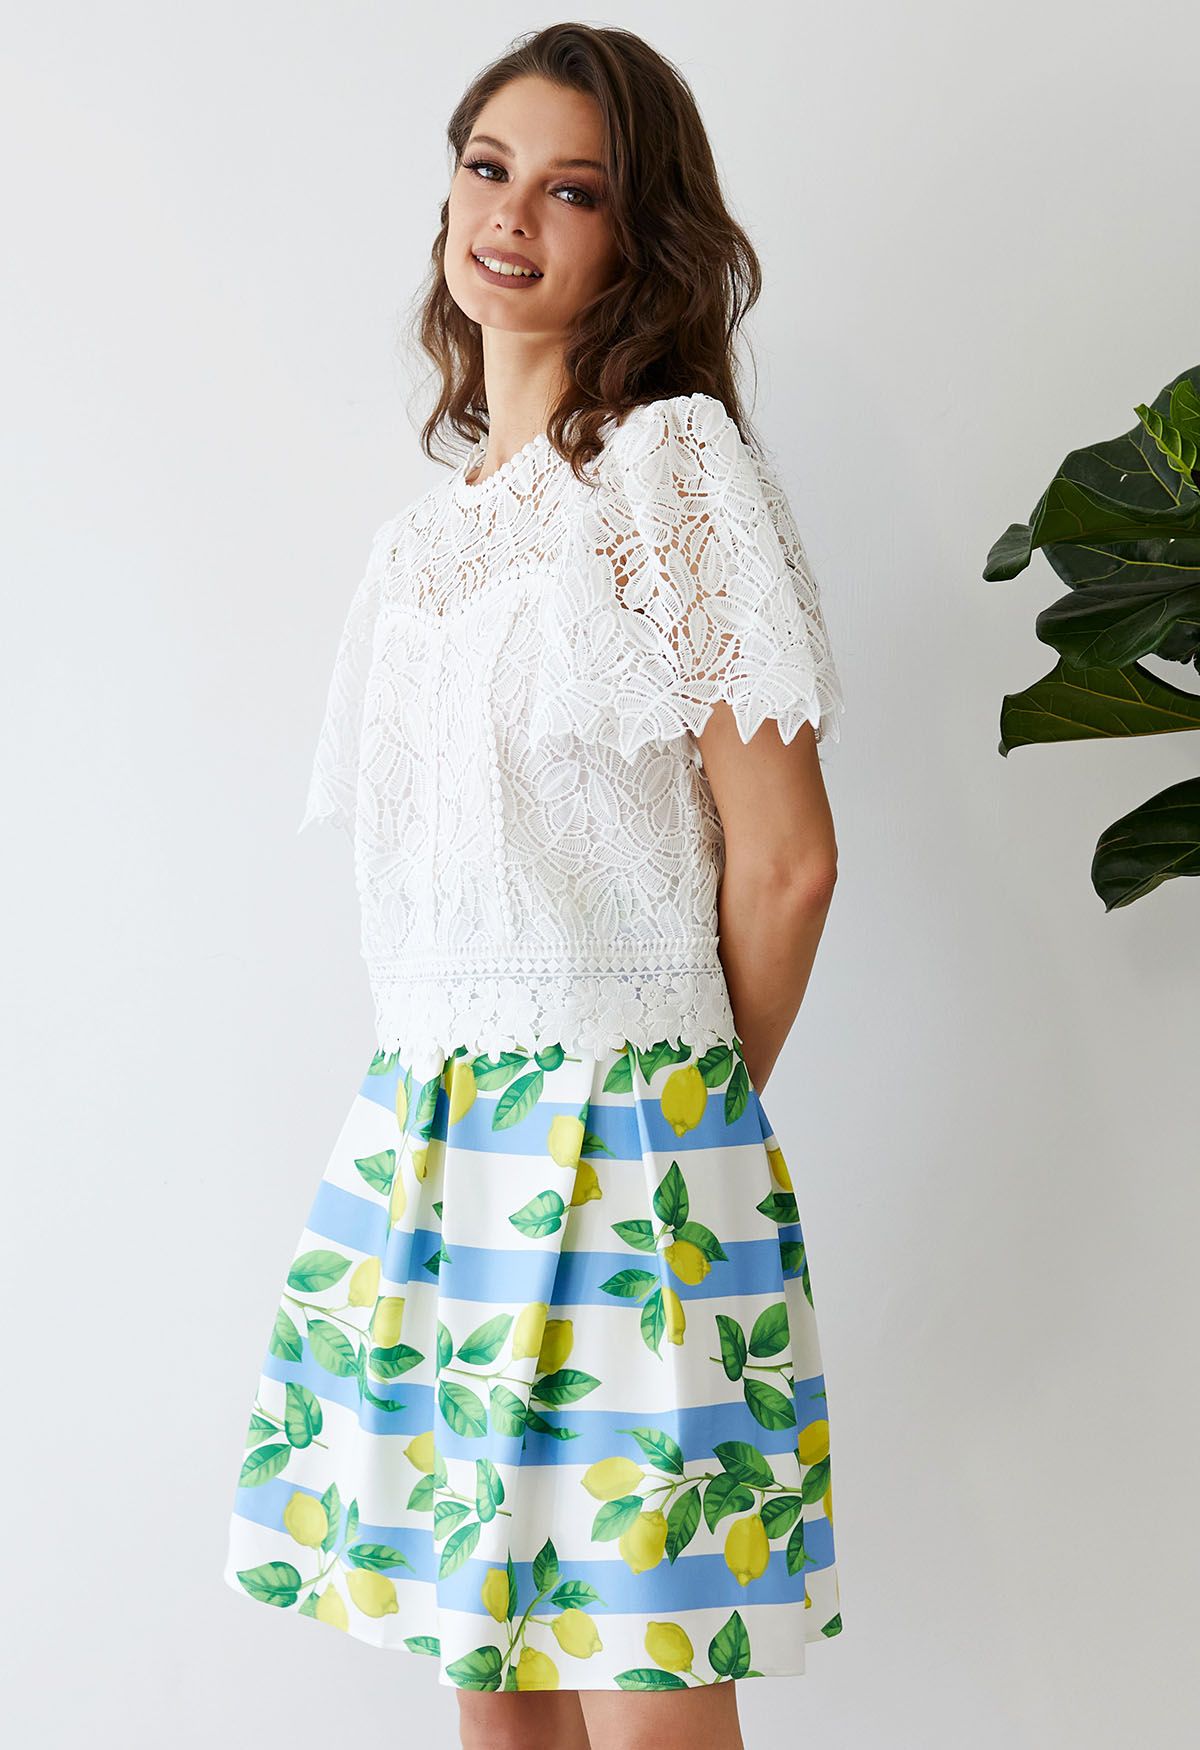 Lemon Branch Stripe Pleated Skirt